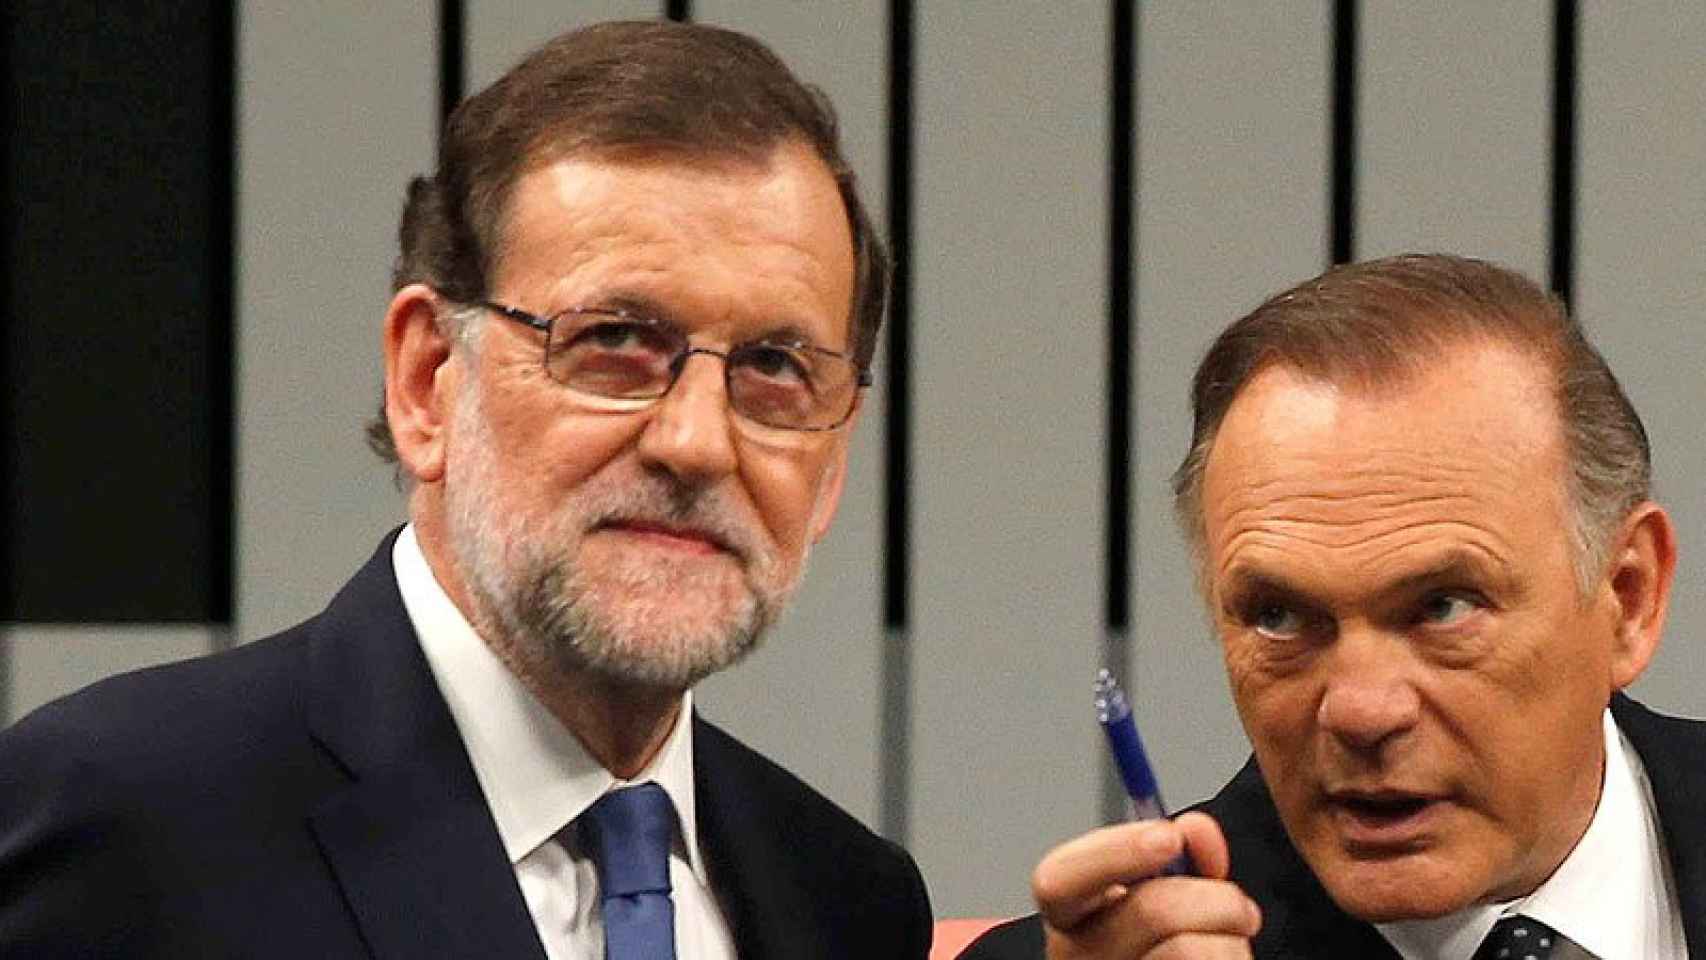 El presidente del Gobierno en funciones y del PP, Mariano Rajoy, atiende a uno de los moderadores del programa, Pedro Piqueras.